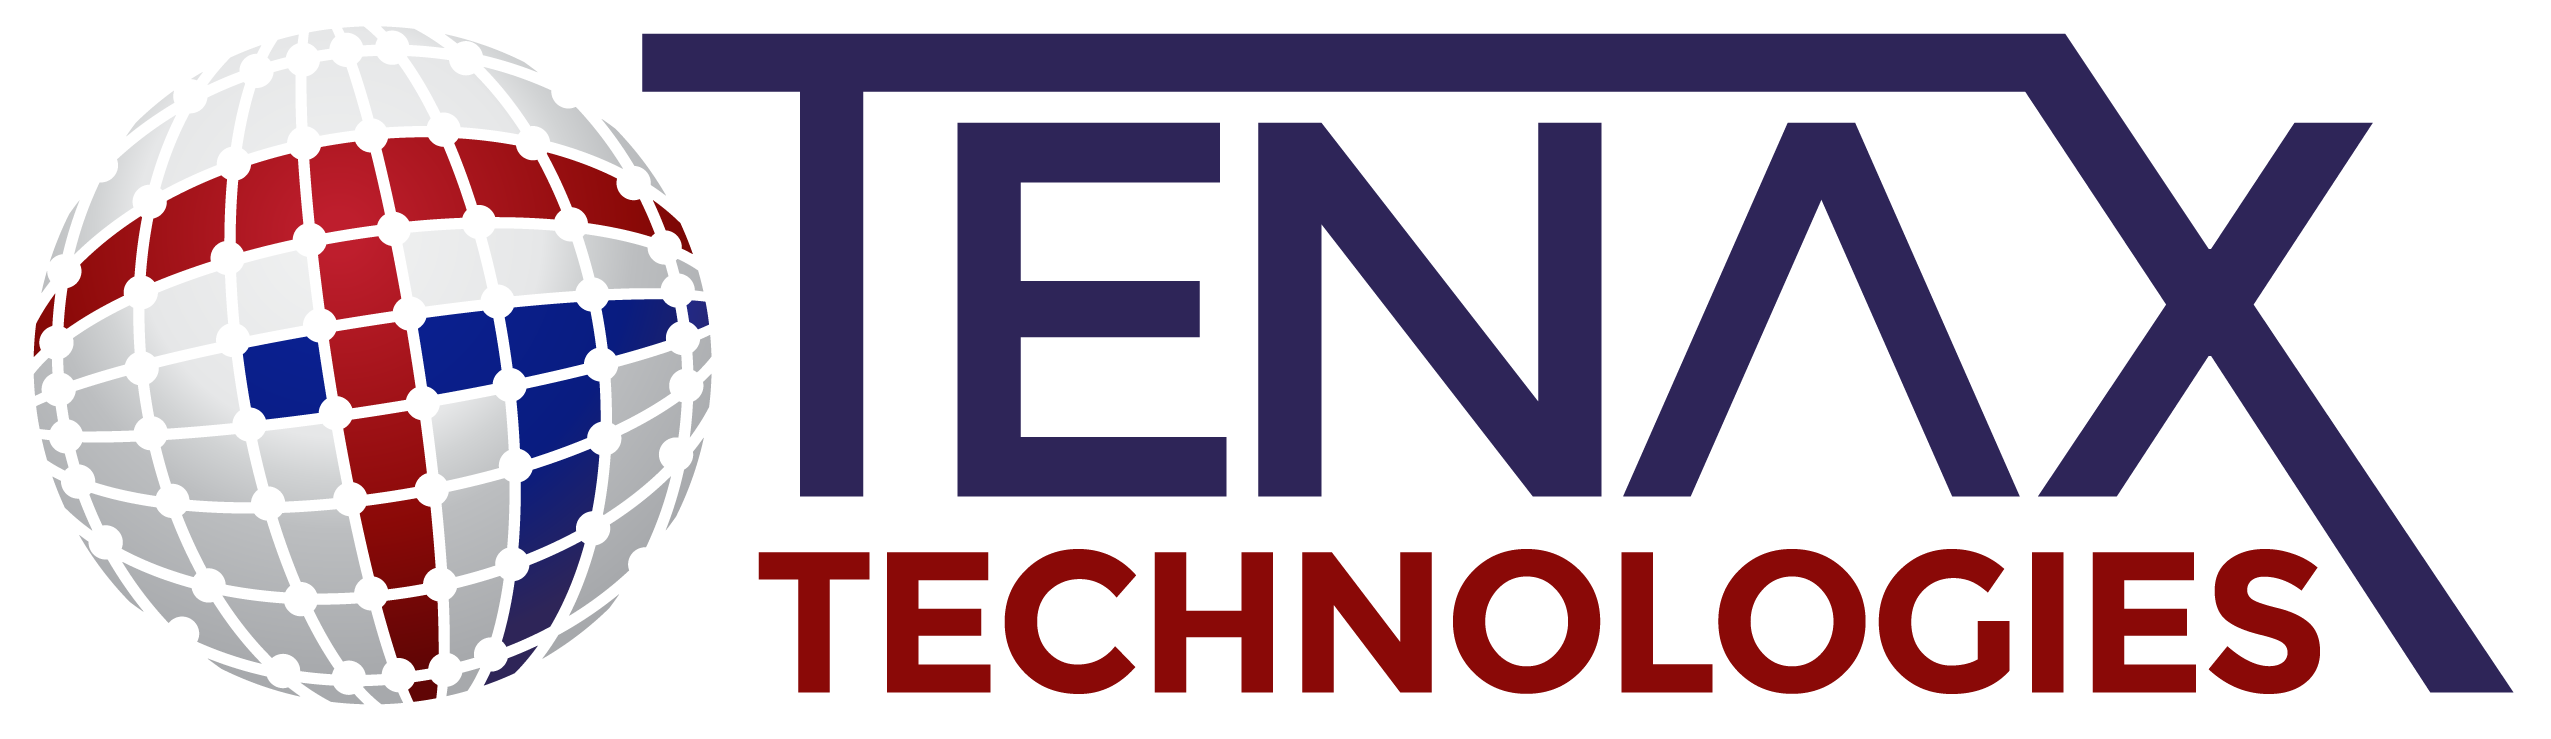 TENAX Technologies Company Logo